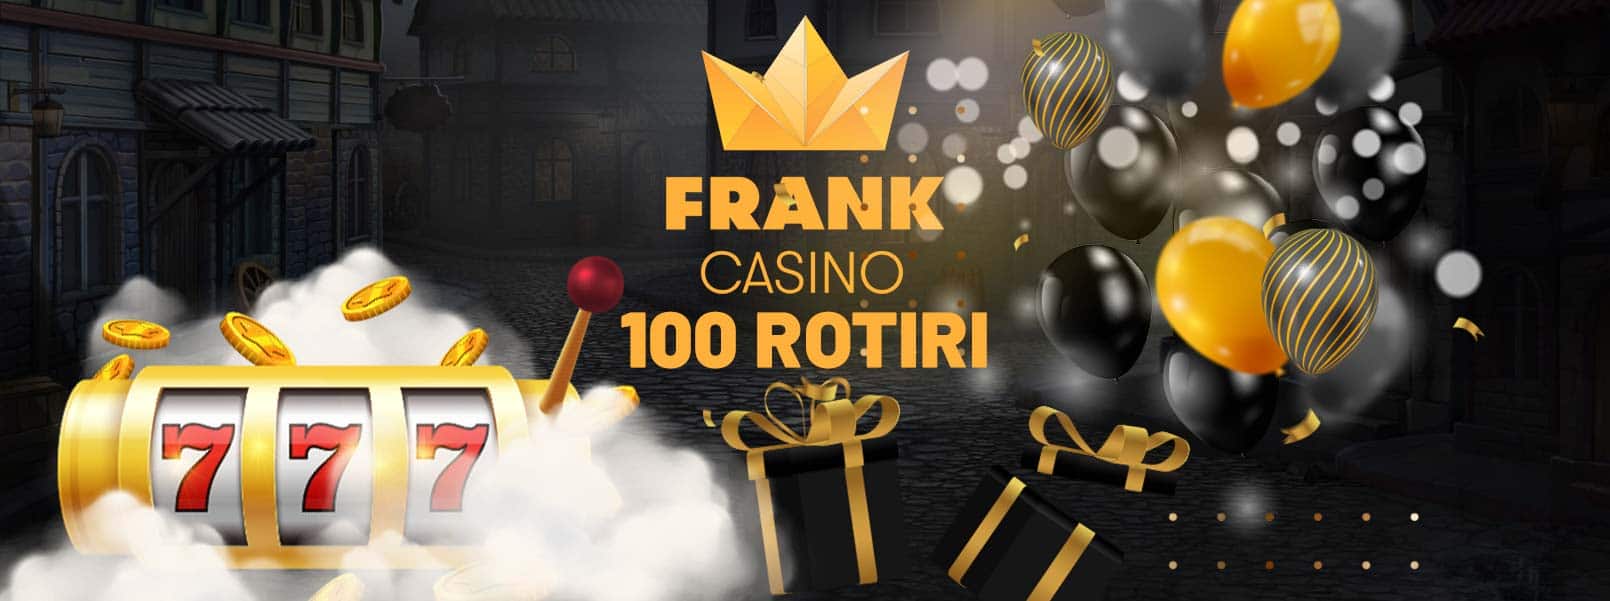 frank casino 100 rotiri